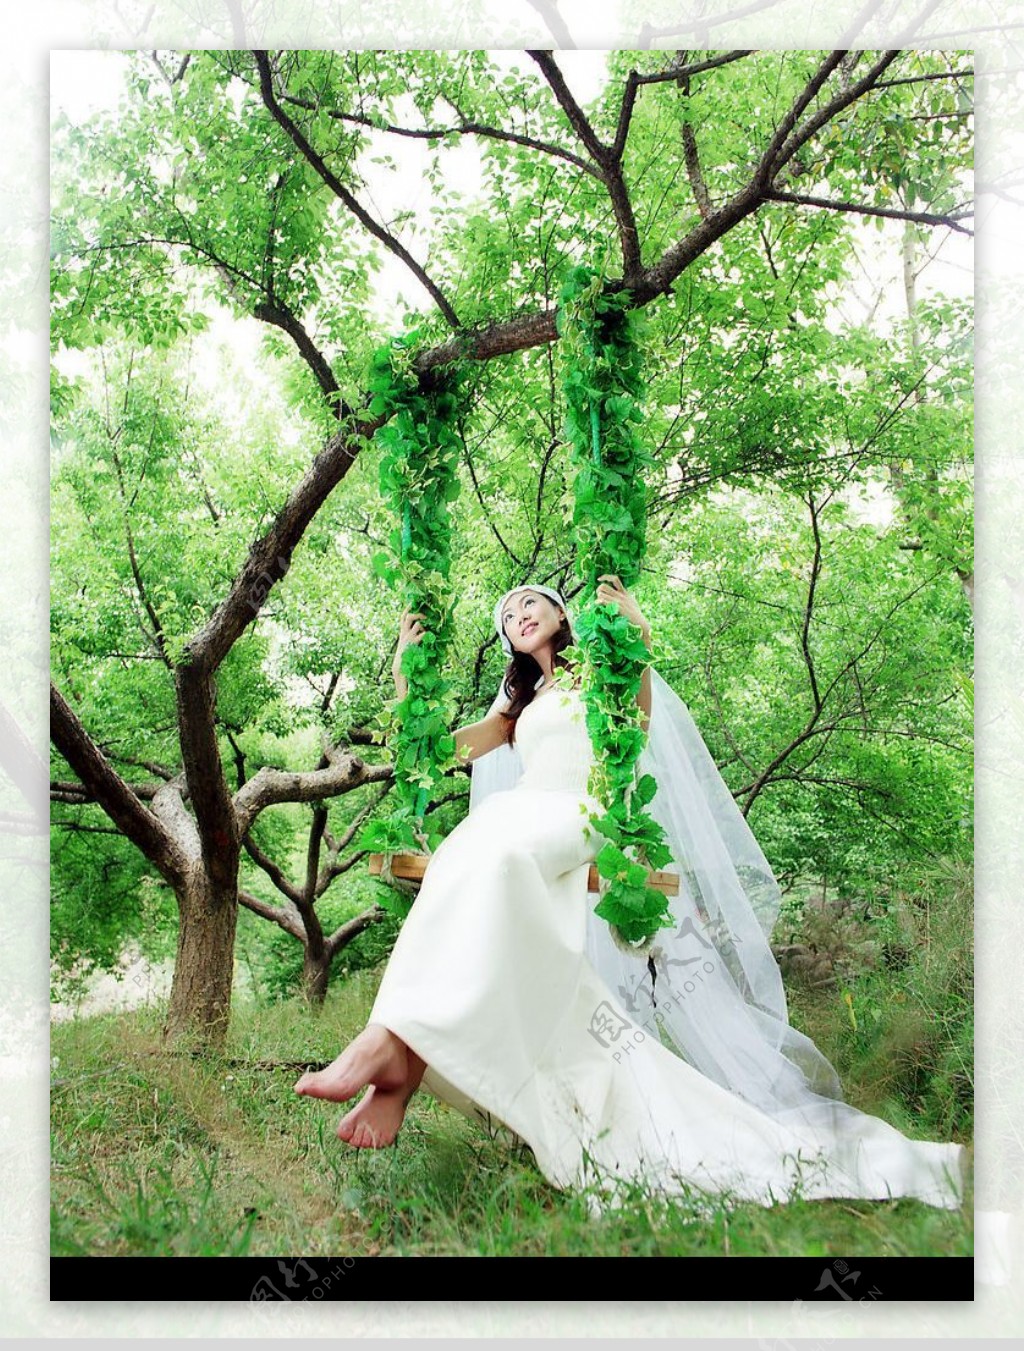 古典而时尚的婚纱幸福秋千图片